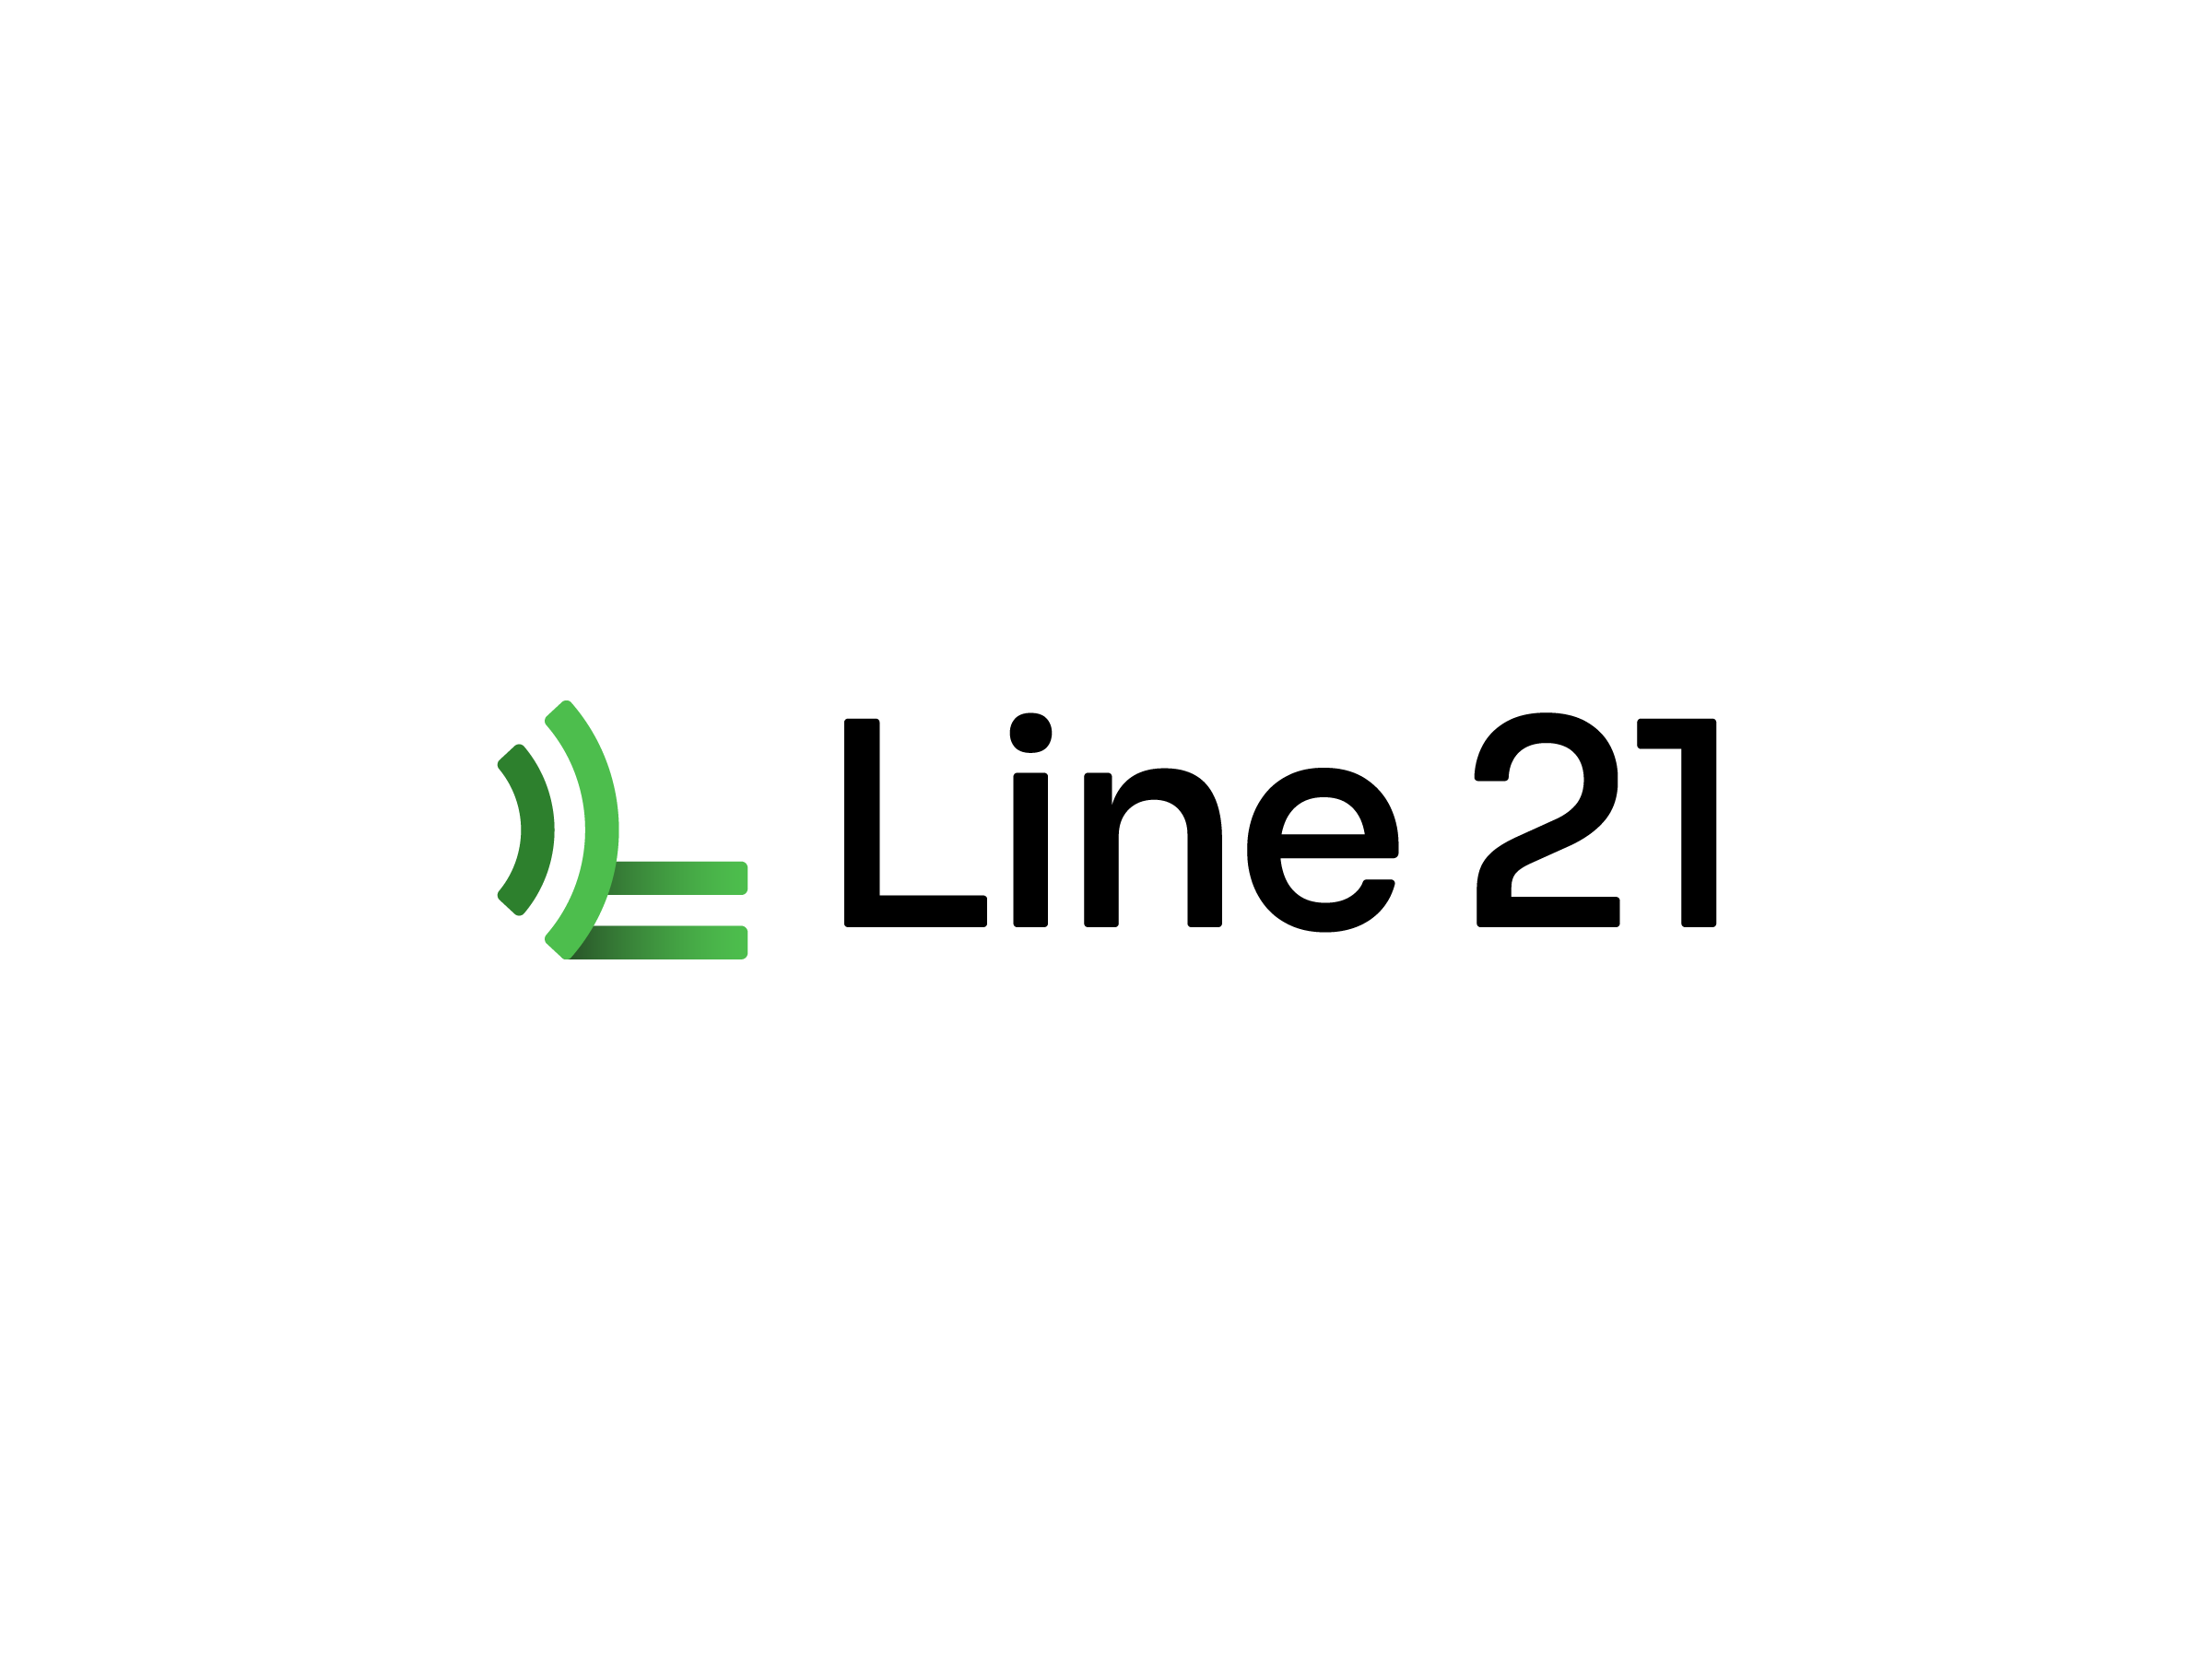 Line21-logo-by-brandforma-com